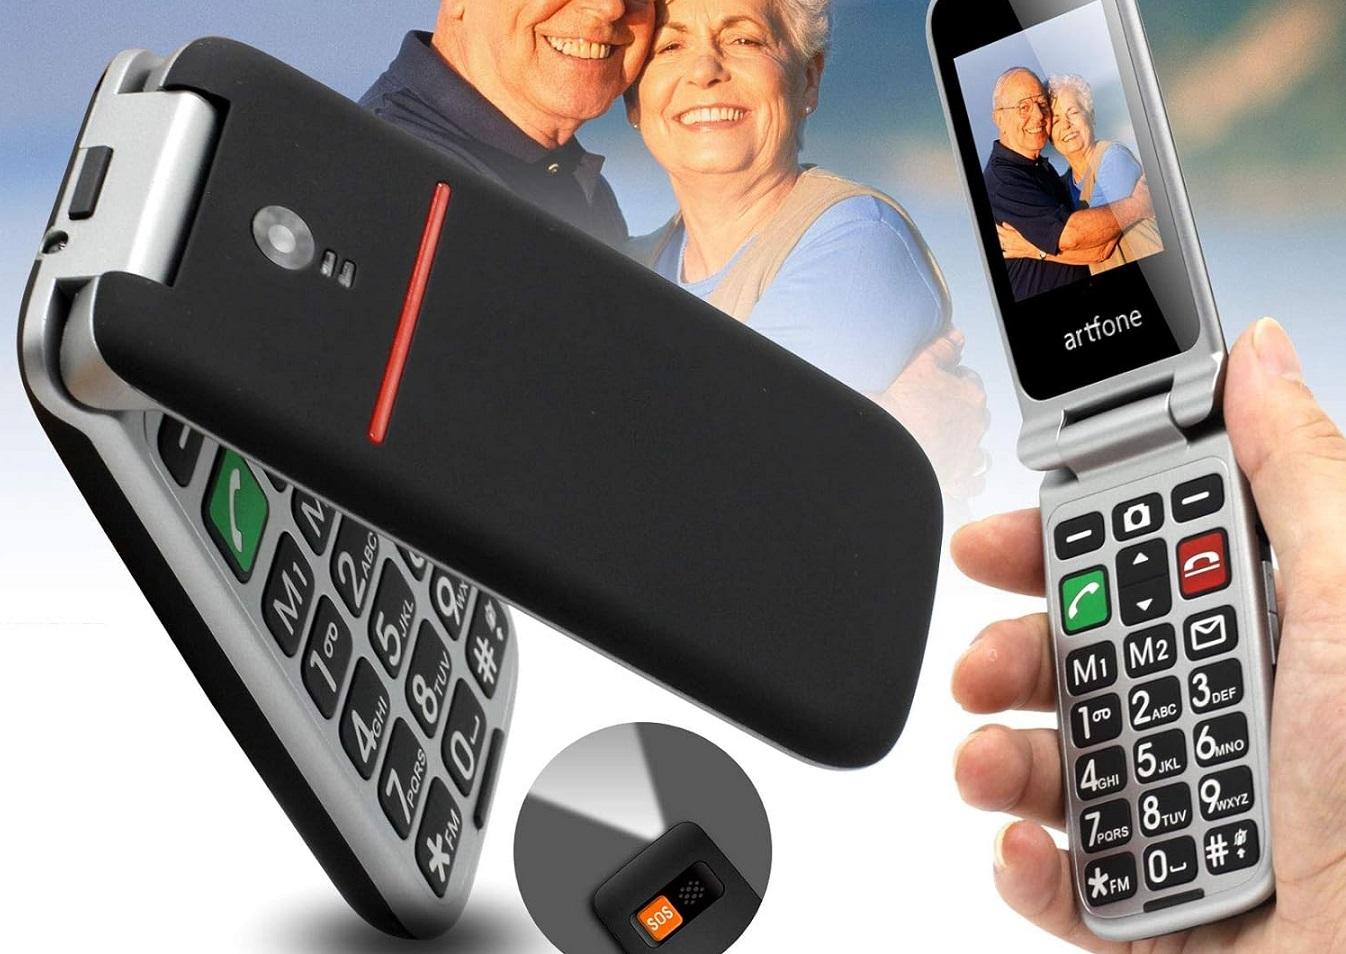 Los mejores teléfonos móviles para personas mayores - Qmayor